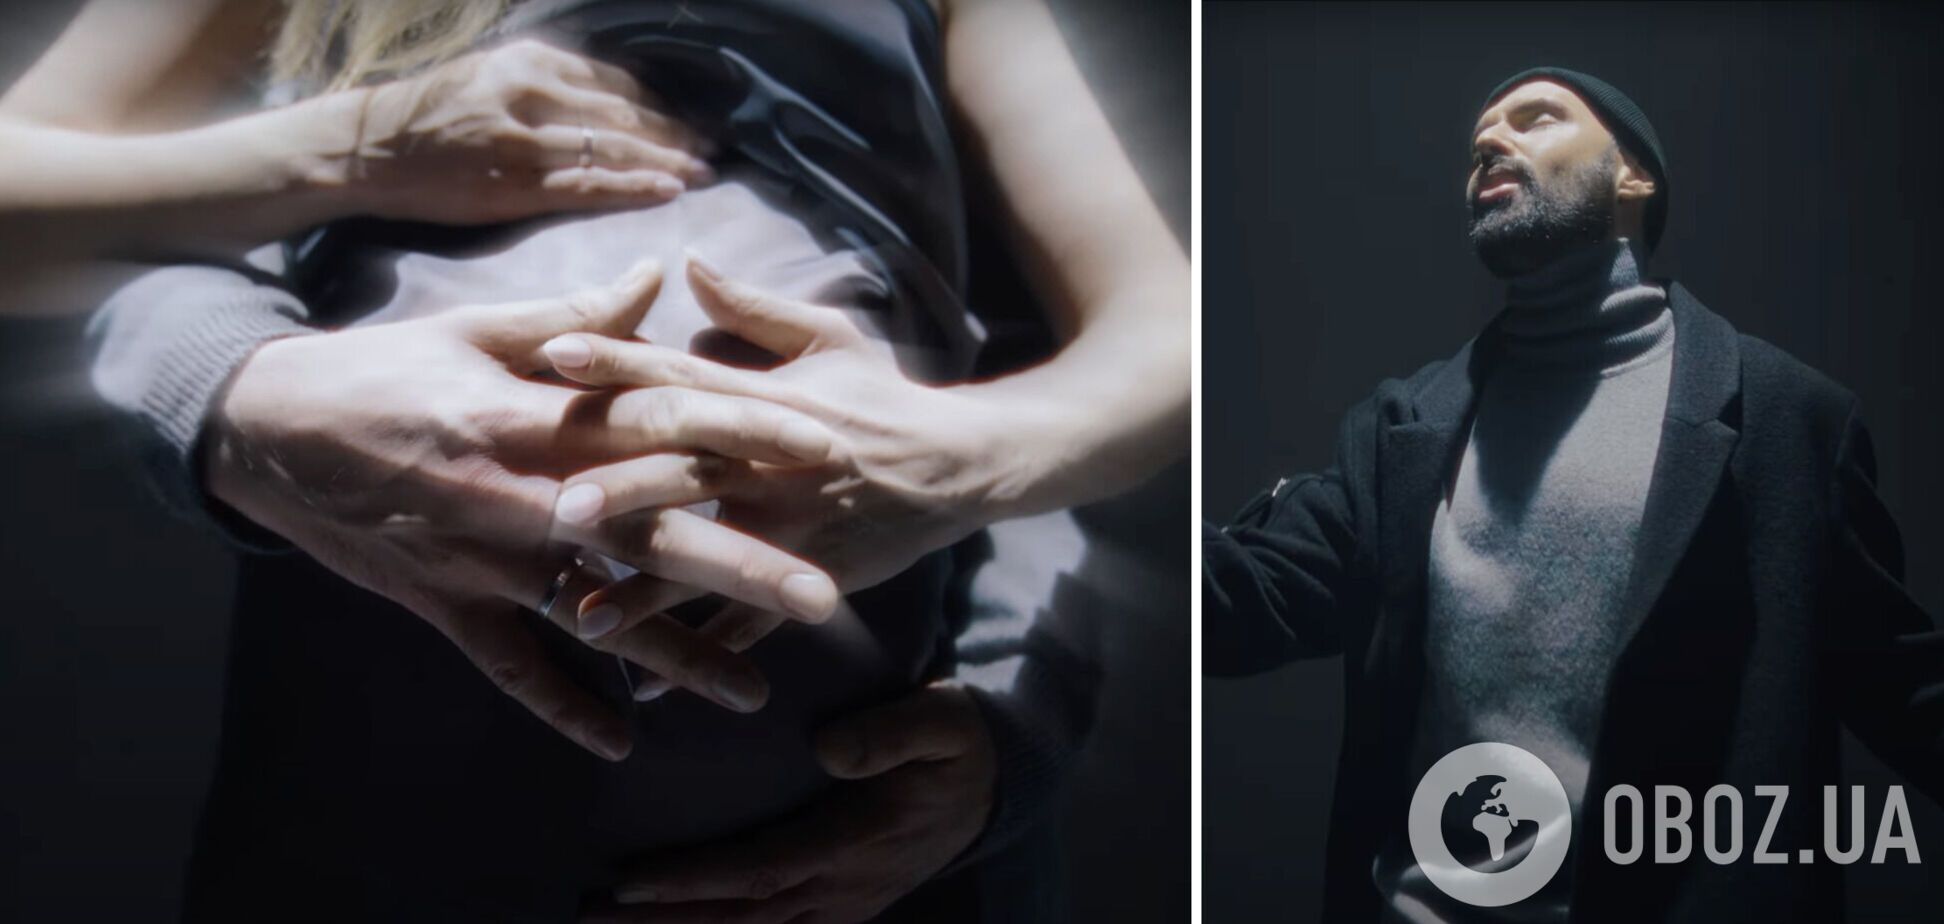 Віталій Козловський показав у новому кліпі 'Рубіж' свою вагітну дружину і випадково розсекретив її імʼя. Відео